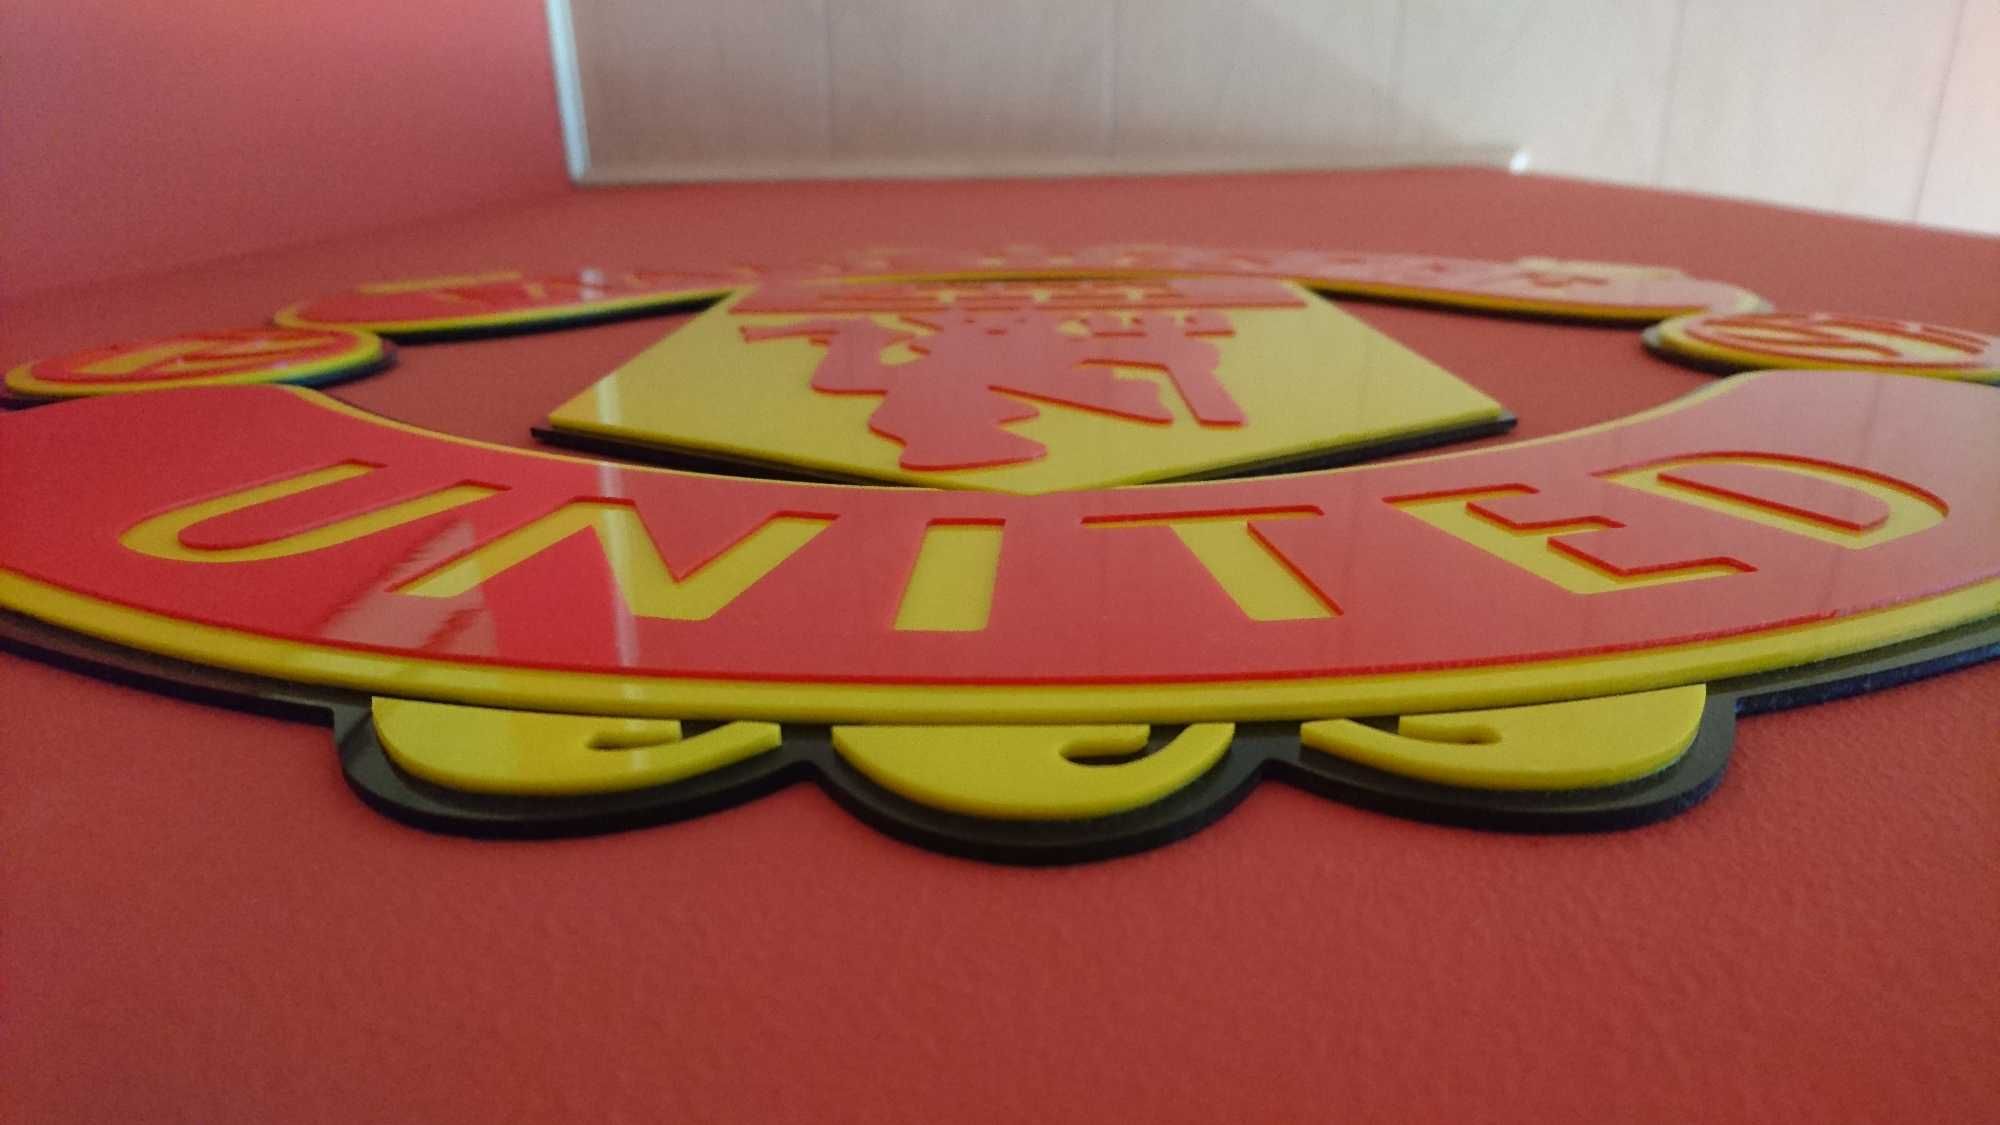 Herb Klubowy 3D Manchester United do pokoju na ścianę gadżet prezent